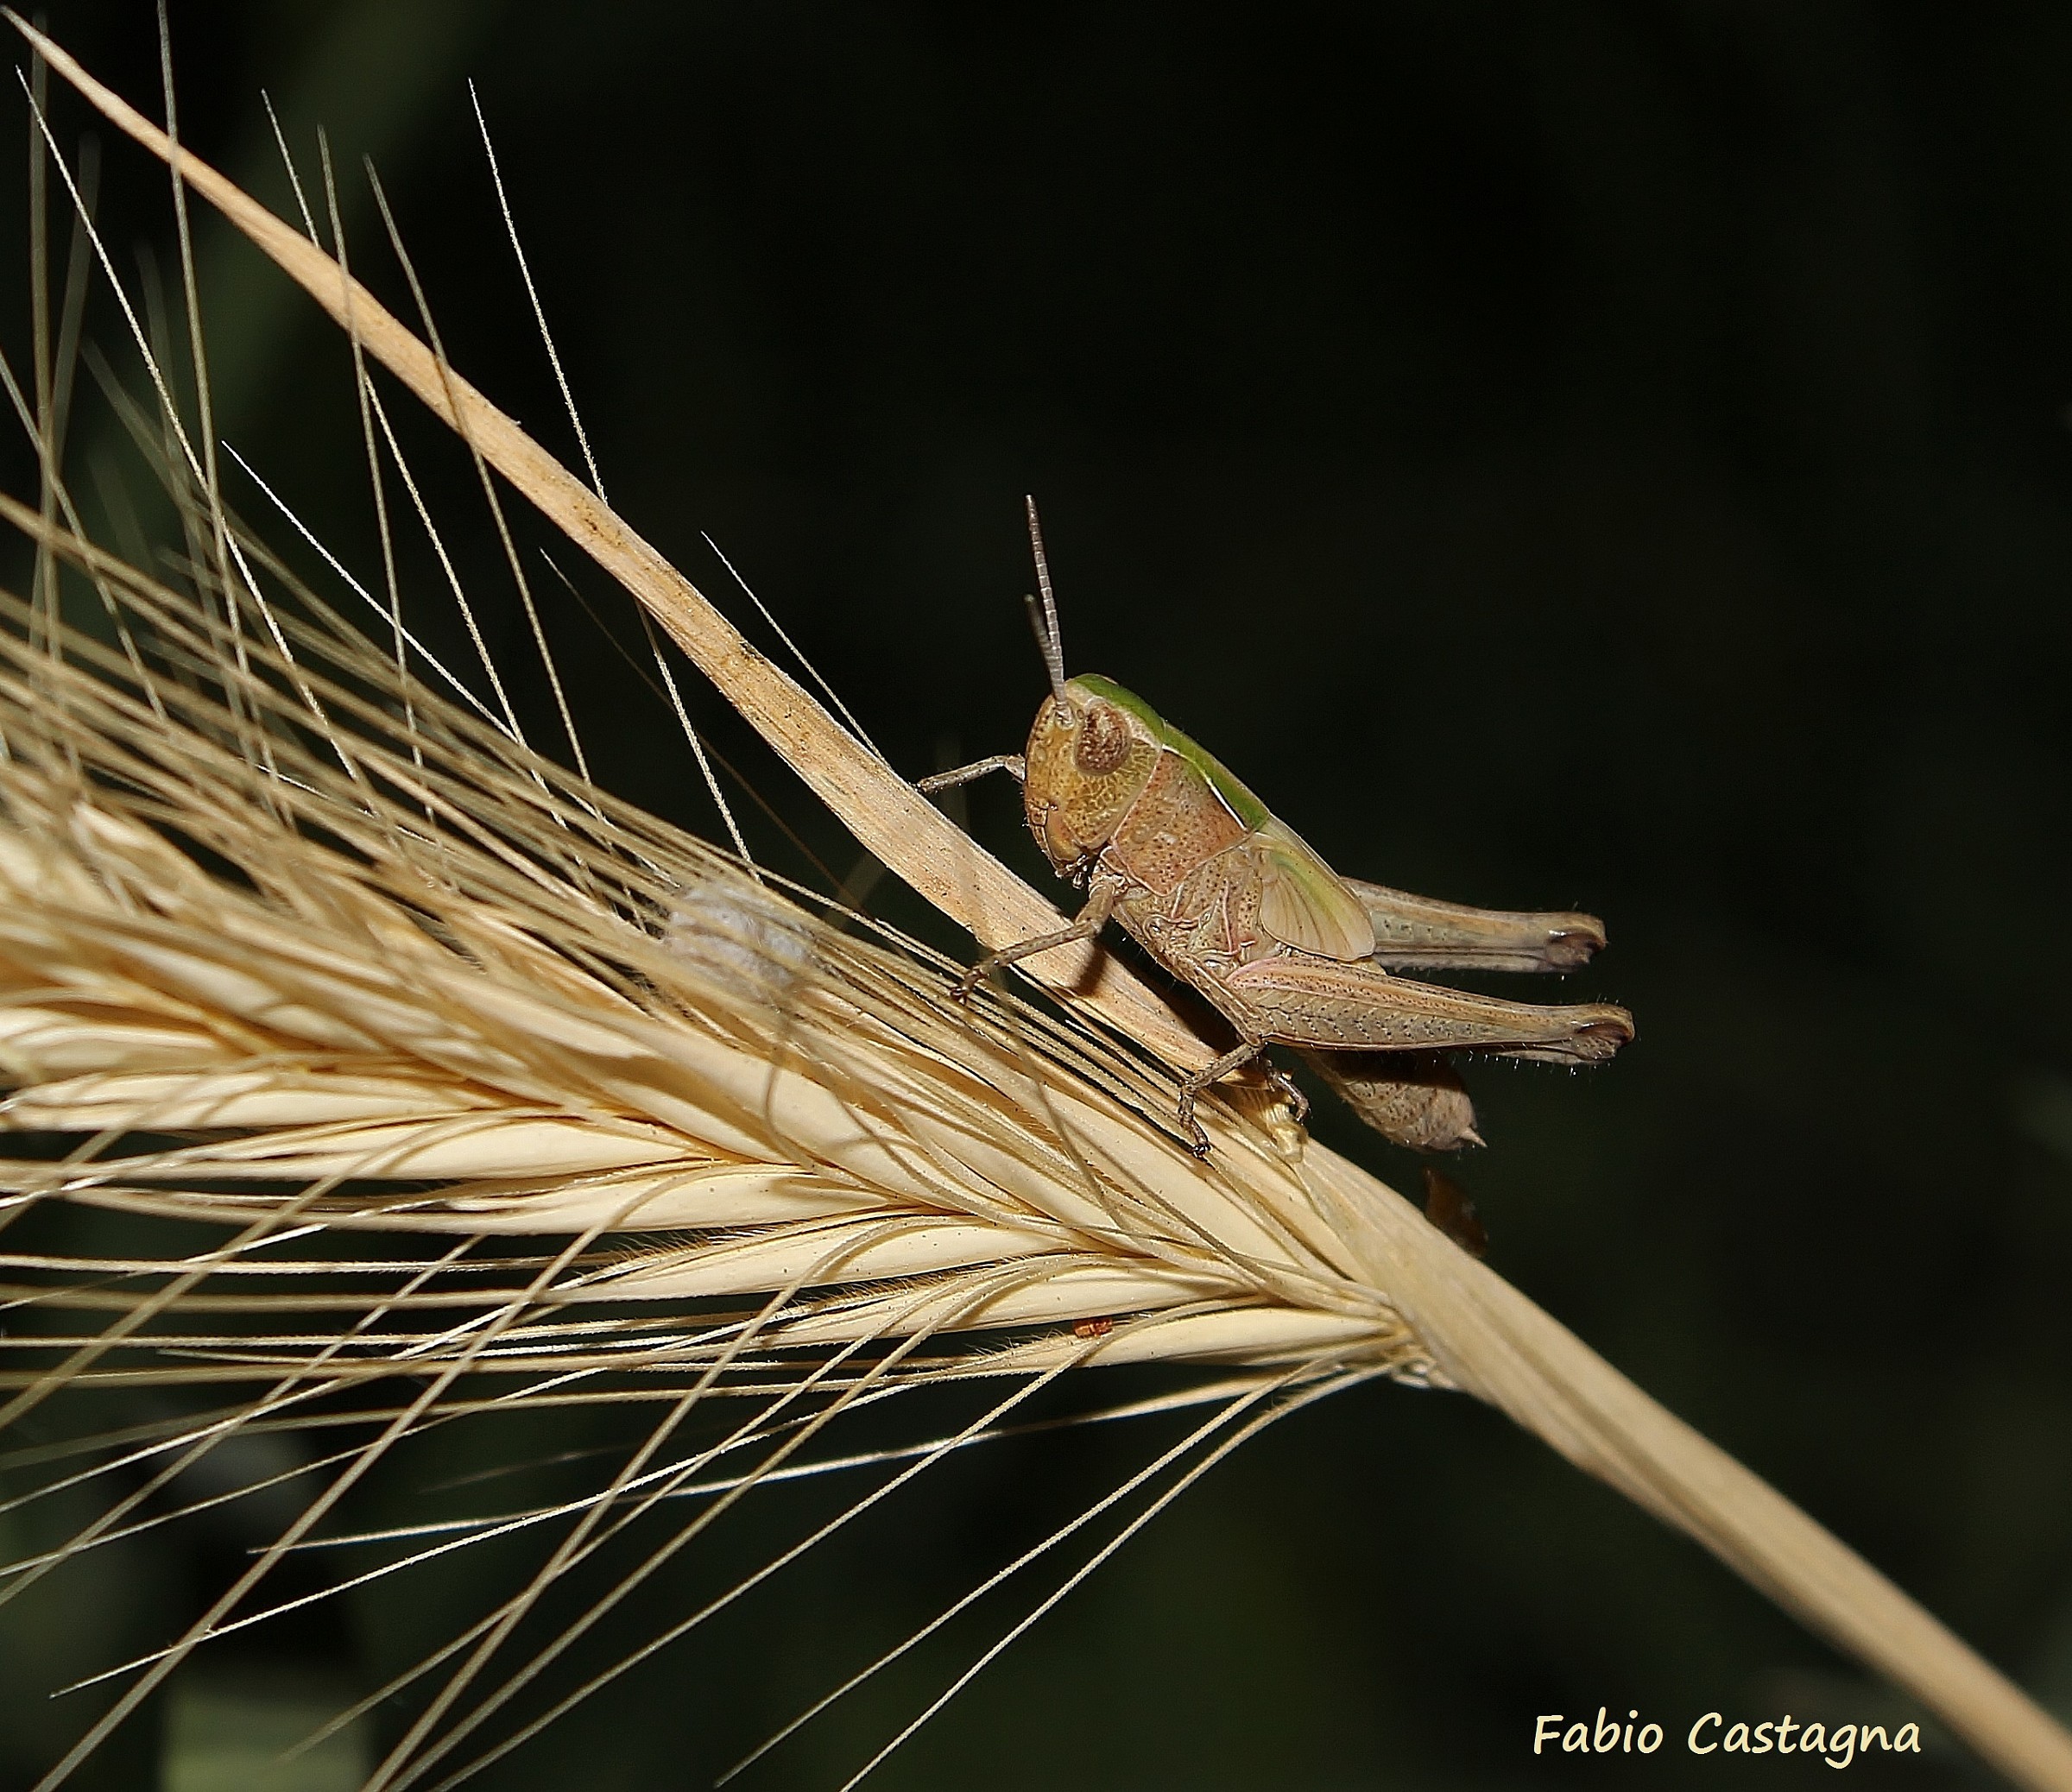 Grasshopper on the ear...